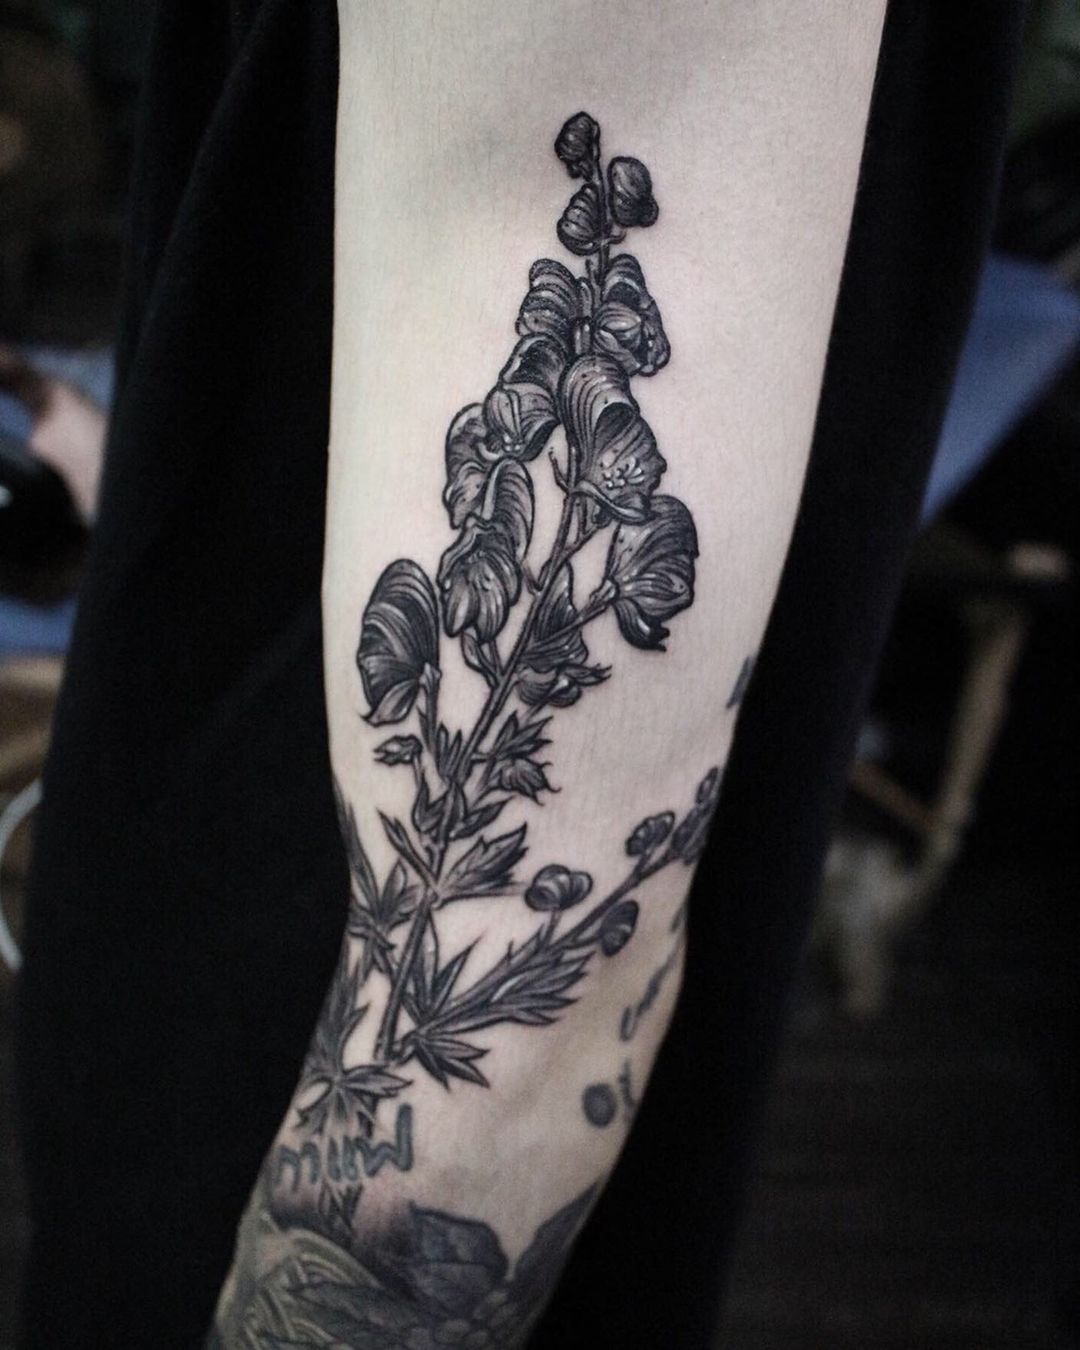 Aconite arm tattoo